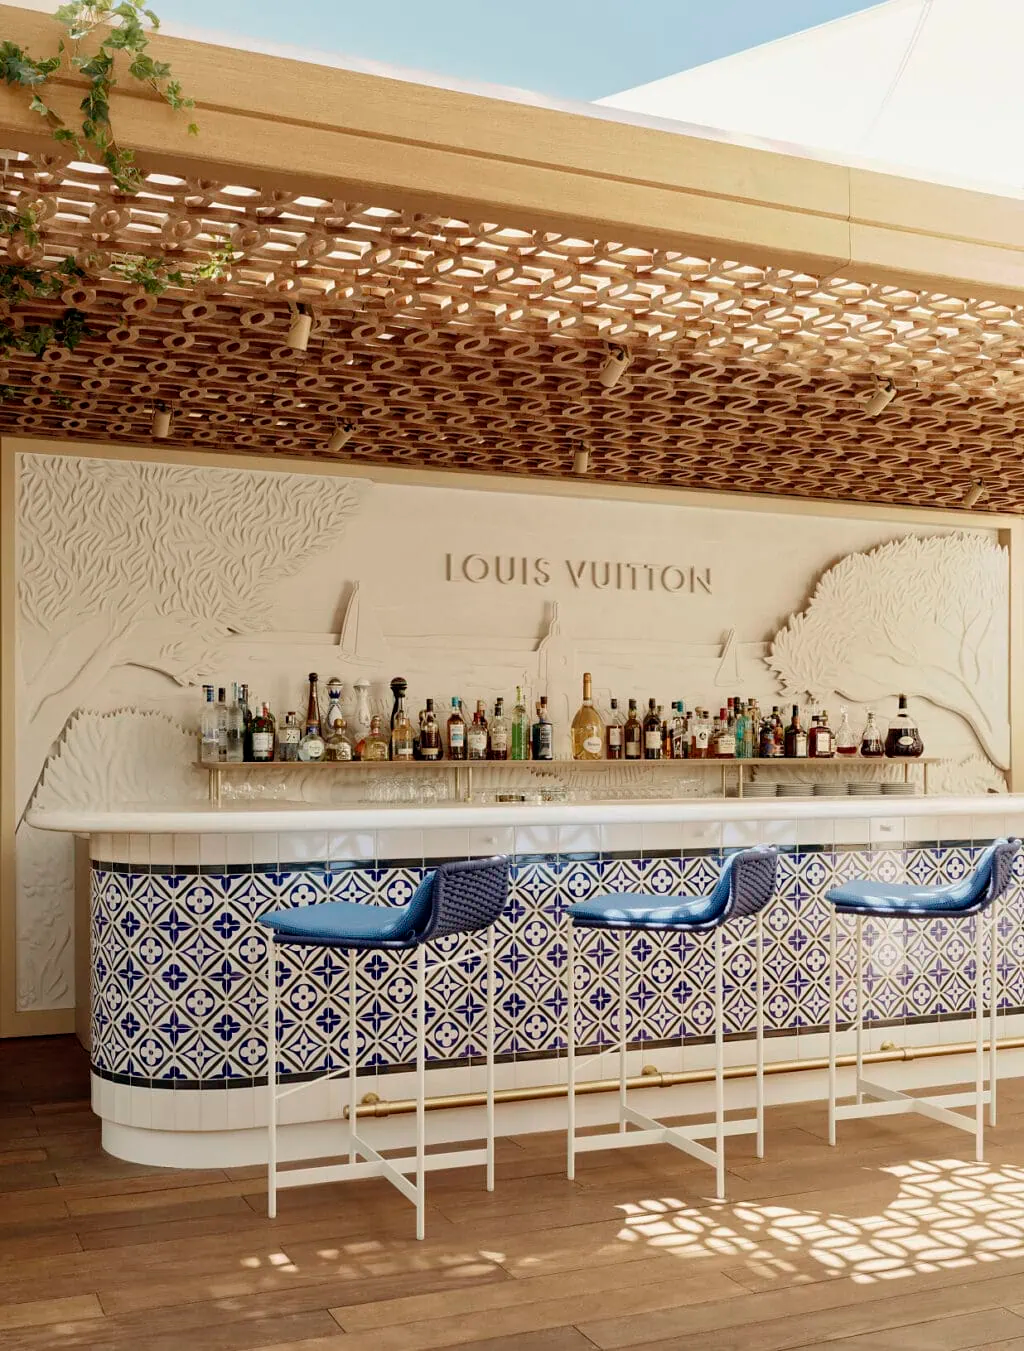 Không gian bên trong nhà hàng được bài trí mang phong cách nhiệt đới với biểu tượng đặc trưng của Louis Vuitton. Ảnh: Elite Traveler